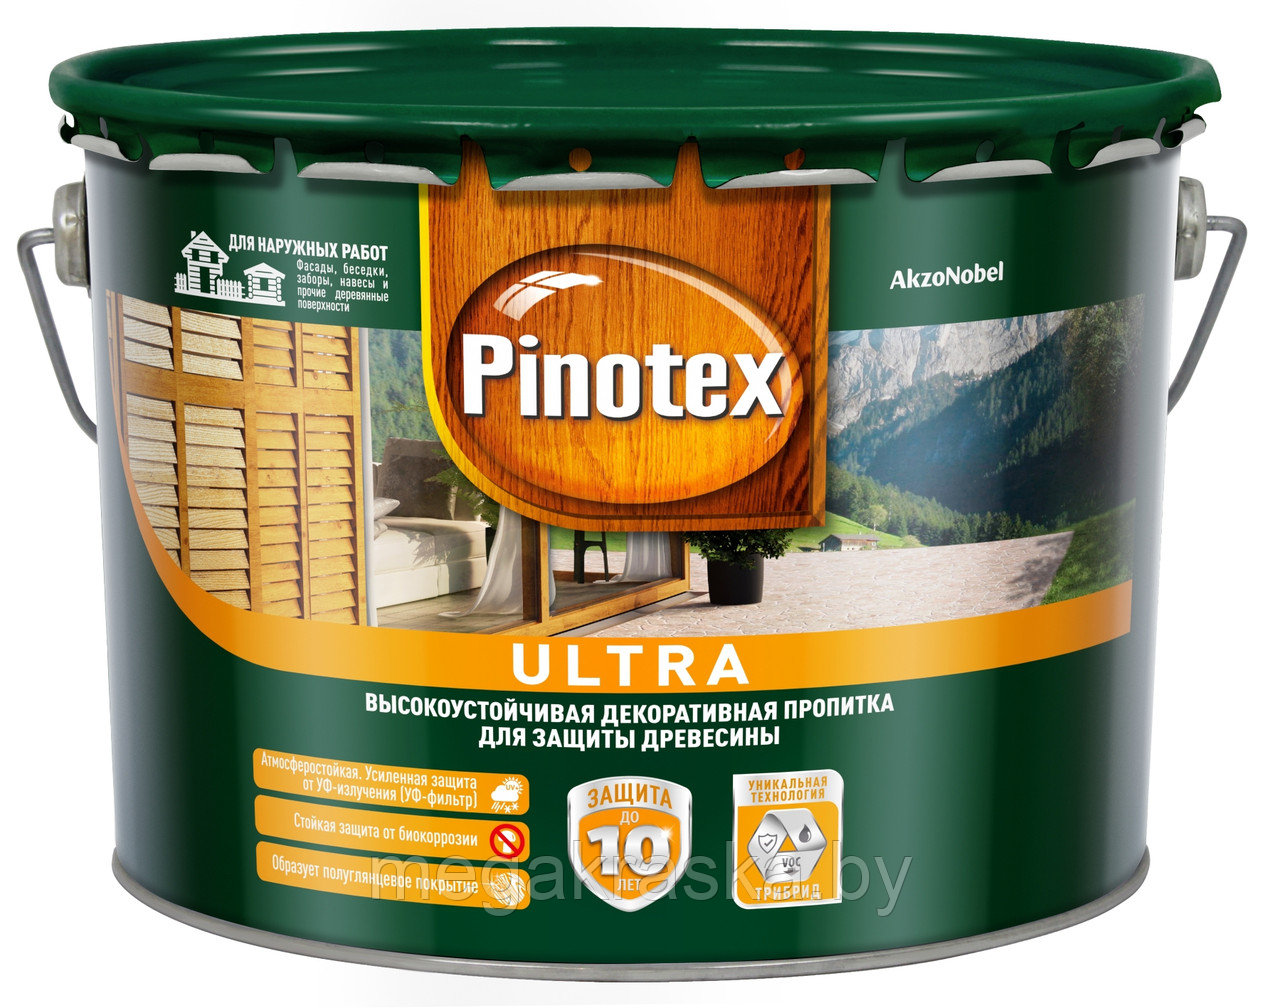 Состав защитный, декоративный для древесины (пропитка) "Pinotex Ultra" (бесцветная+цветная) 10л.